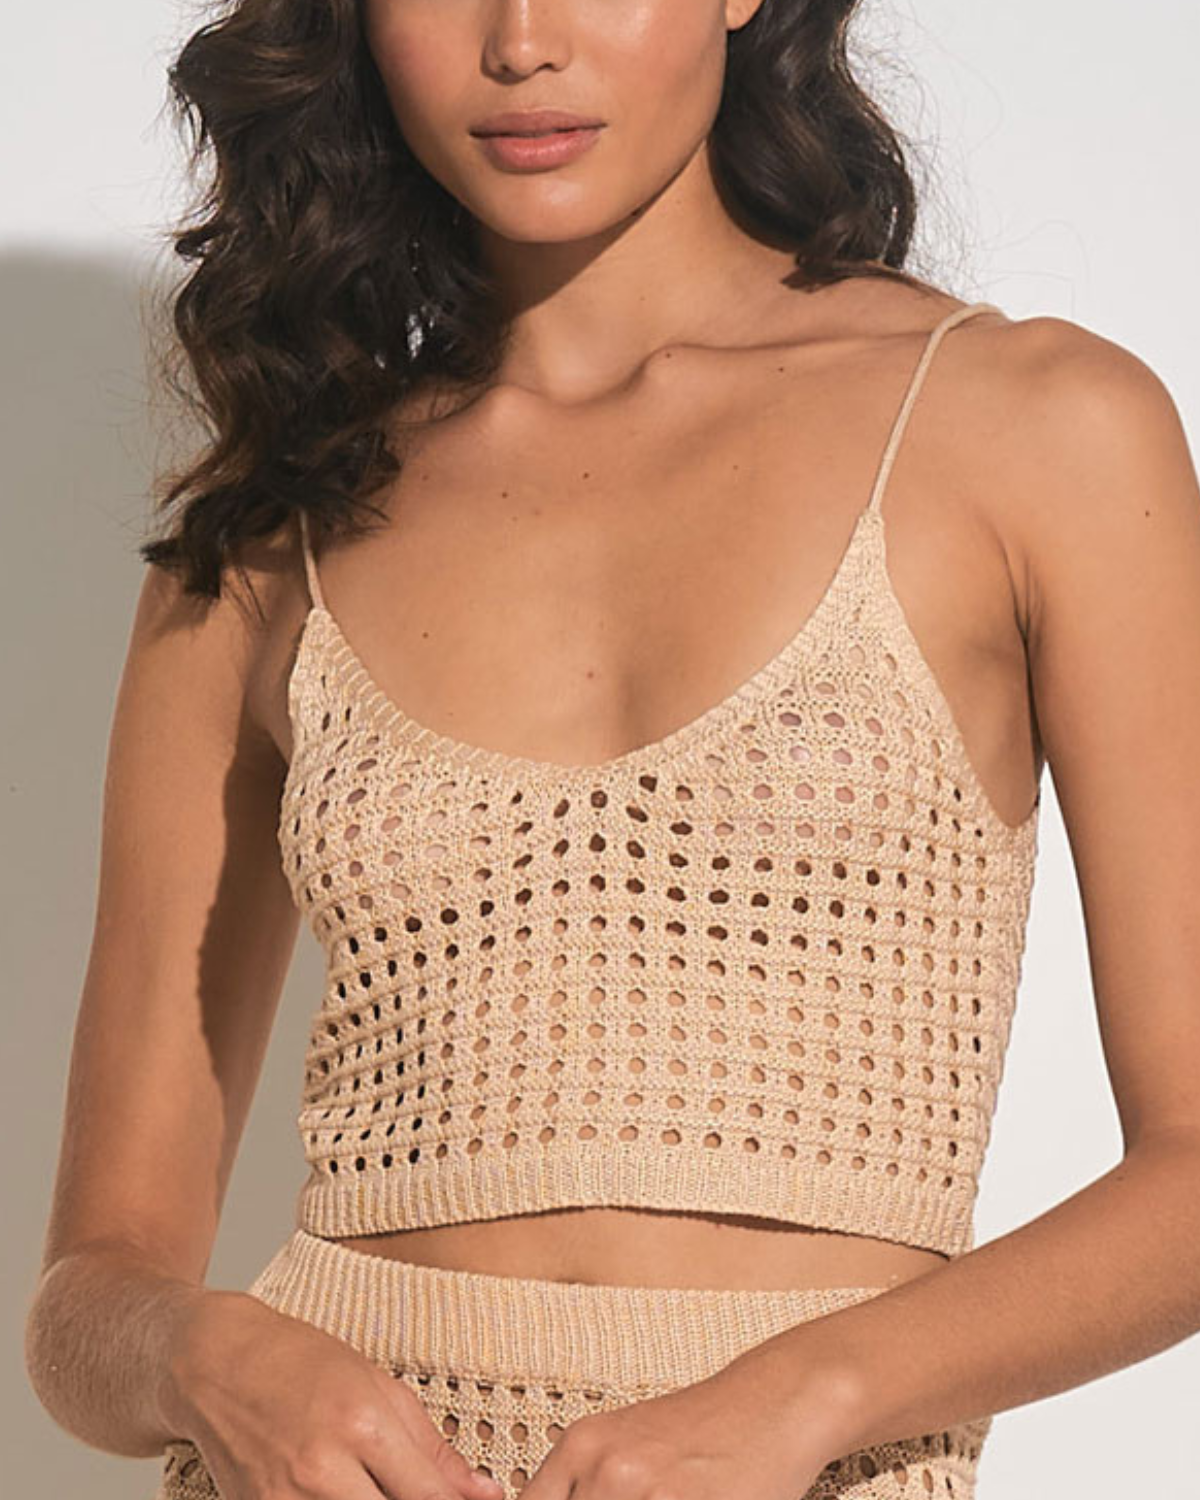 Model wearing a cropped crochet top in tan